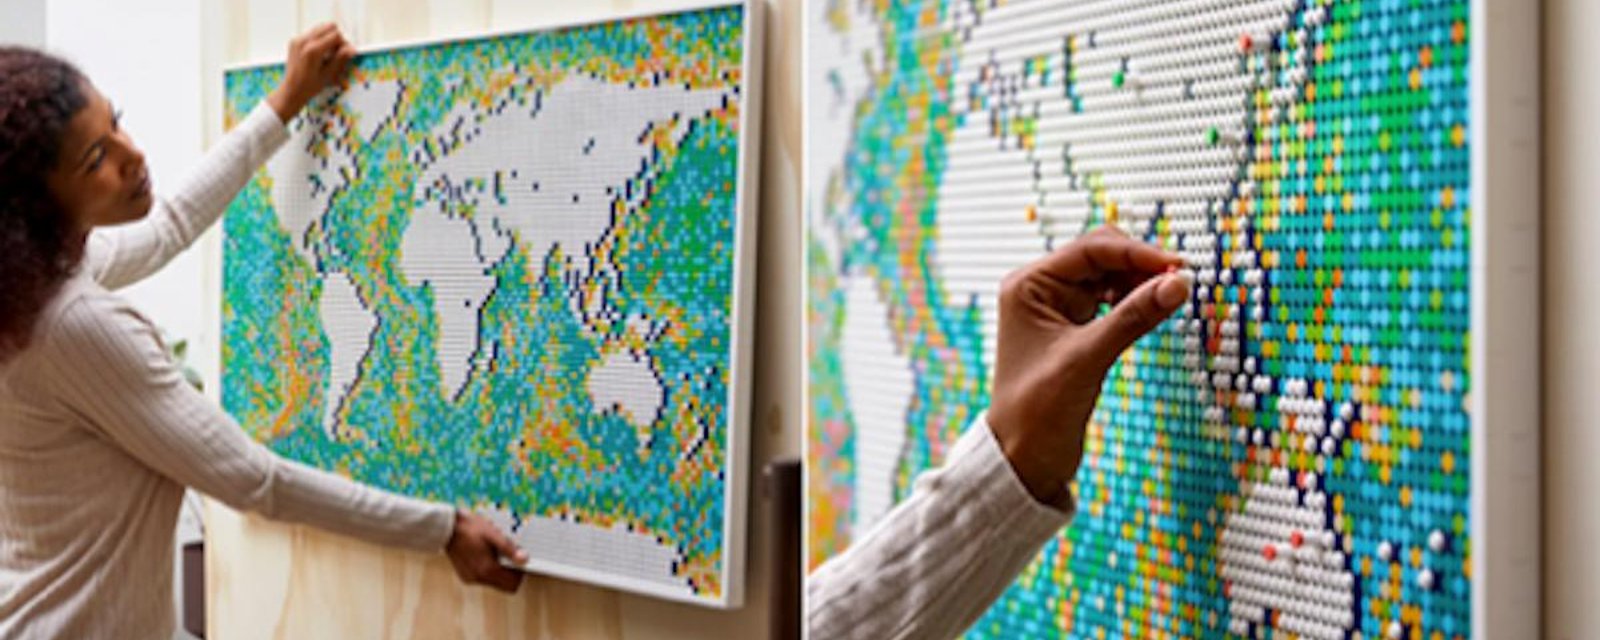 LEGO a créé une carte du monde à construire pour y indiquer nos voyages